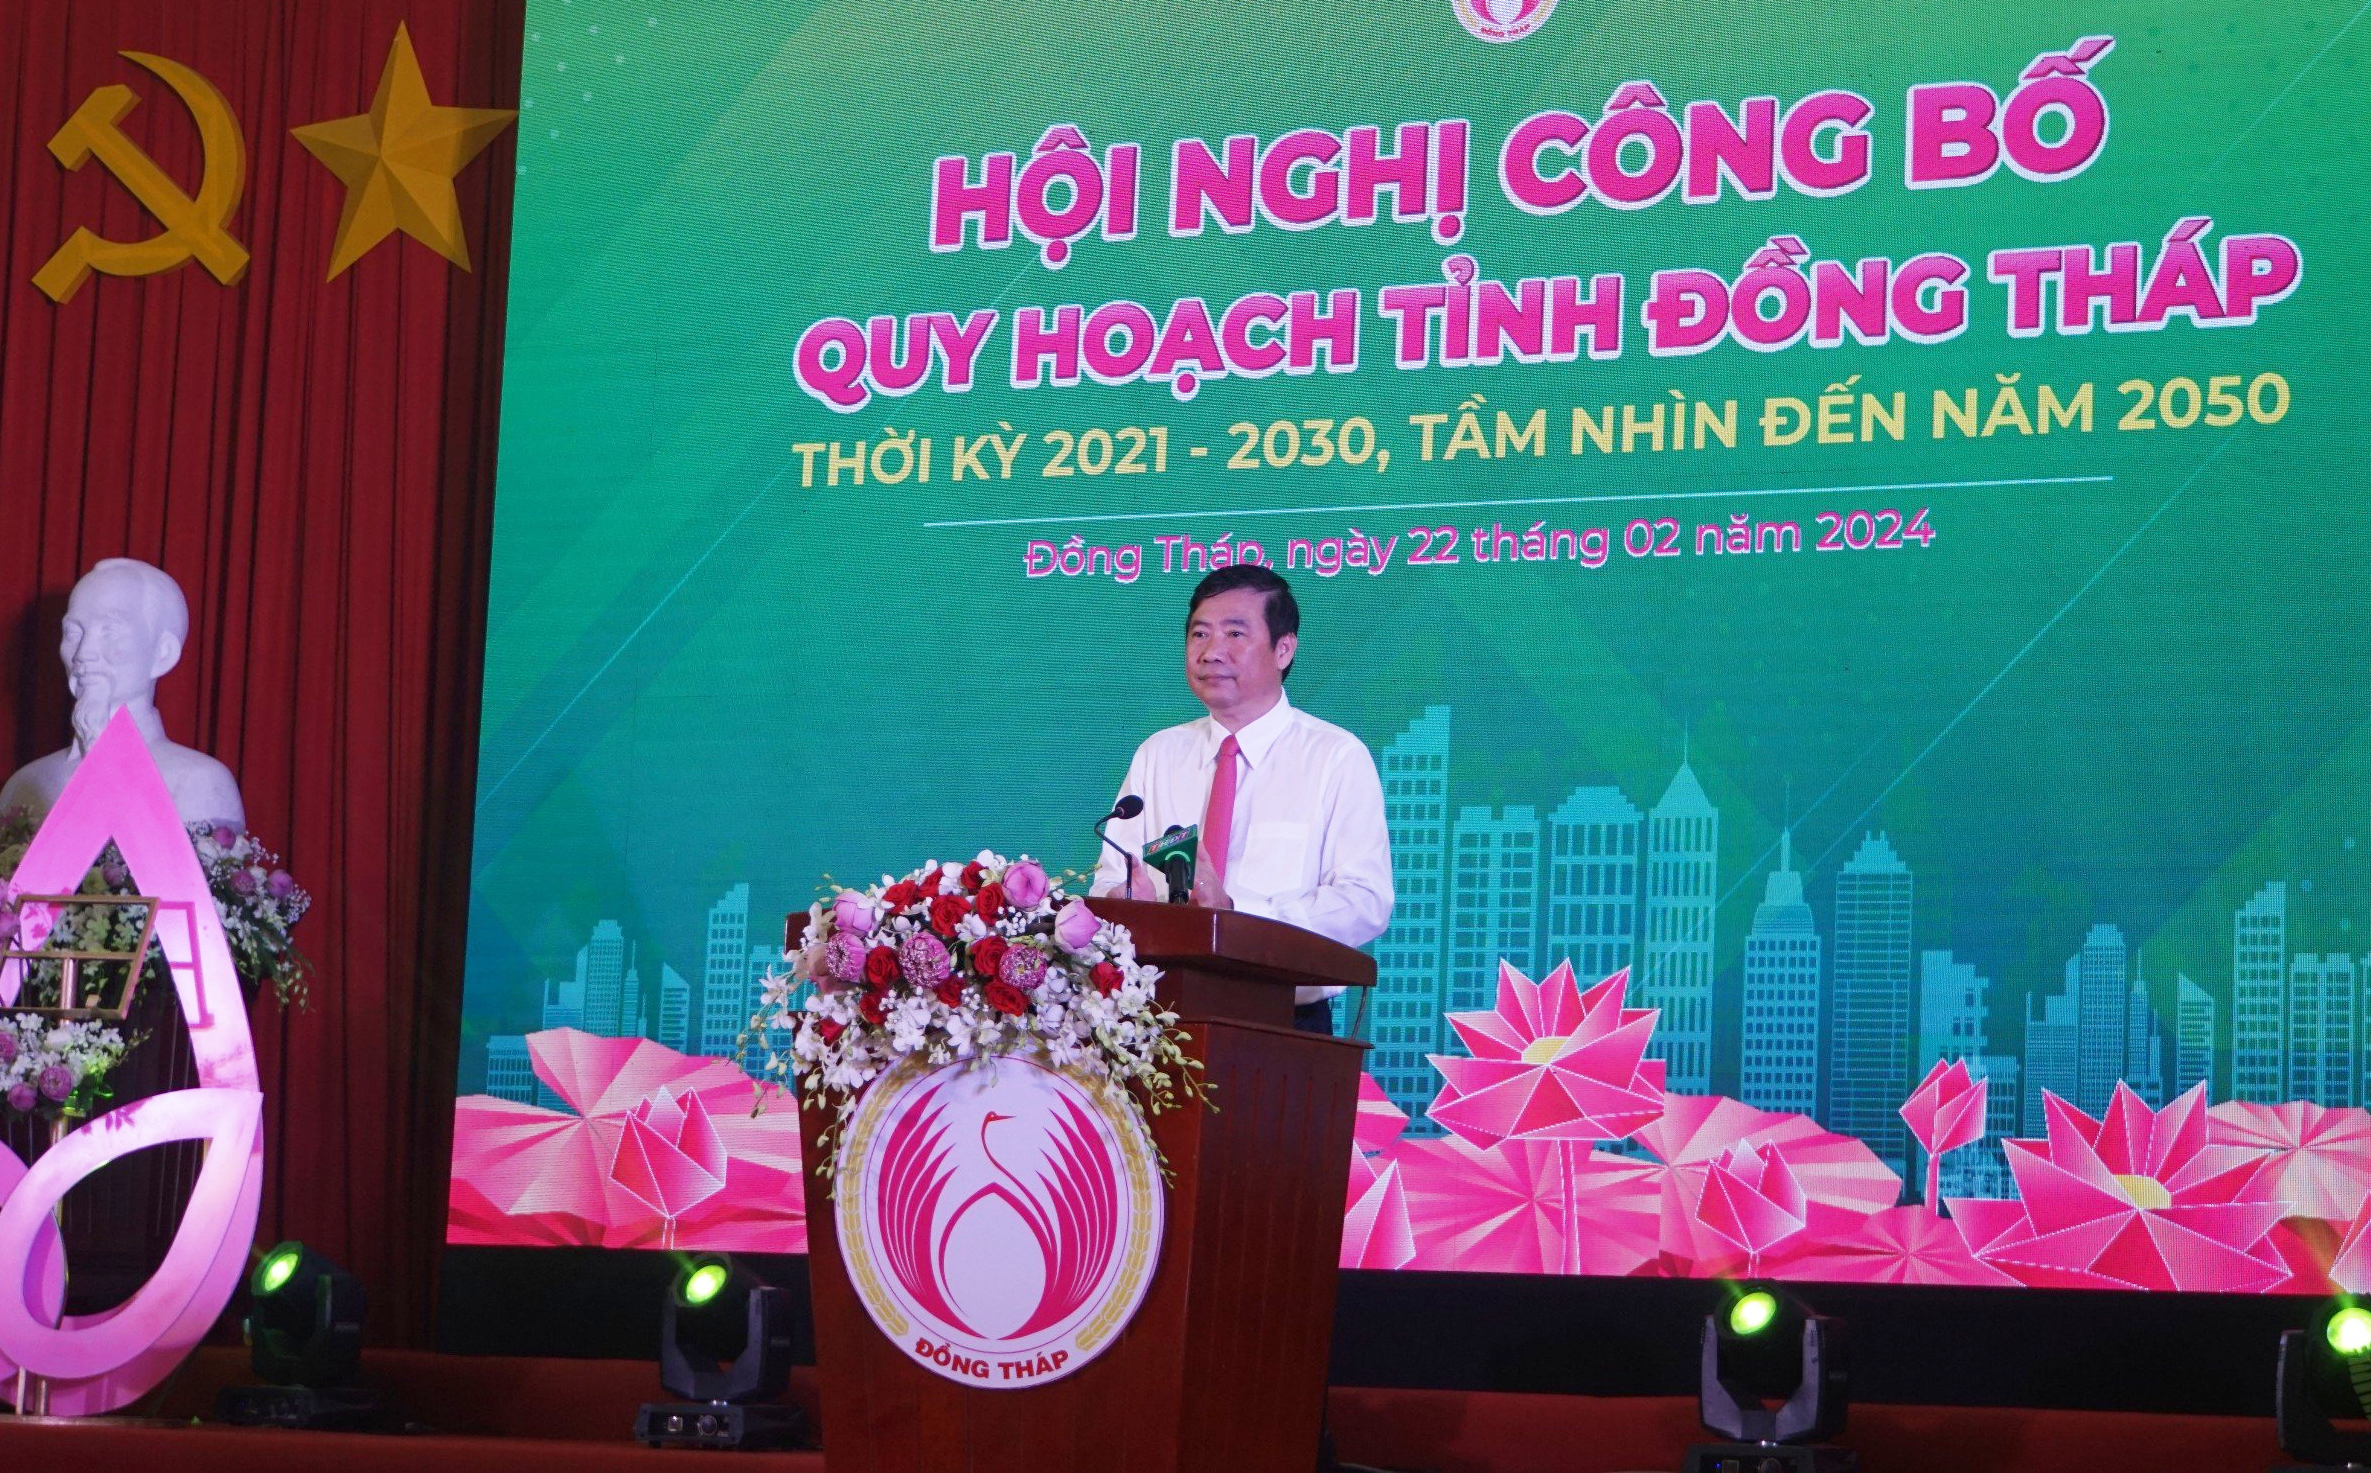 Phó Thủ tướng Lê Minh Khái mong muốn nhiều nhà đầu tư, tổ chức quốc tế đầu tư vào tỉnh Đồng Tháp- Ảnh 2.